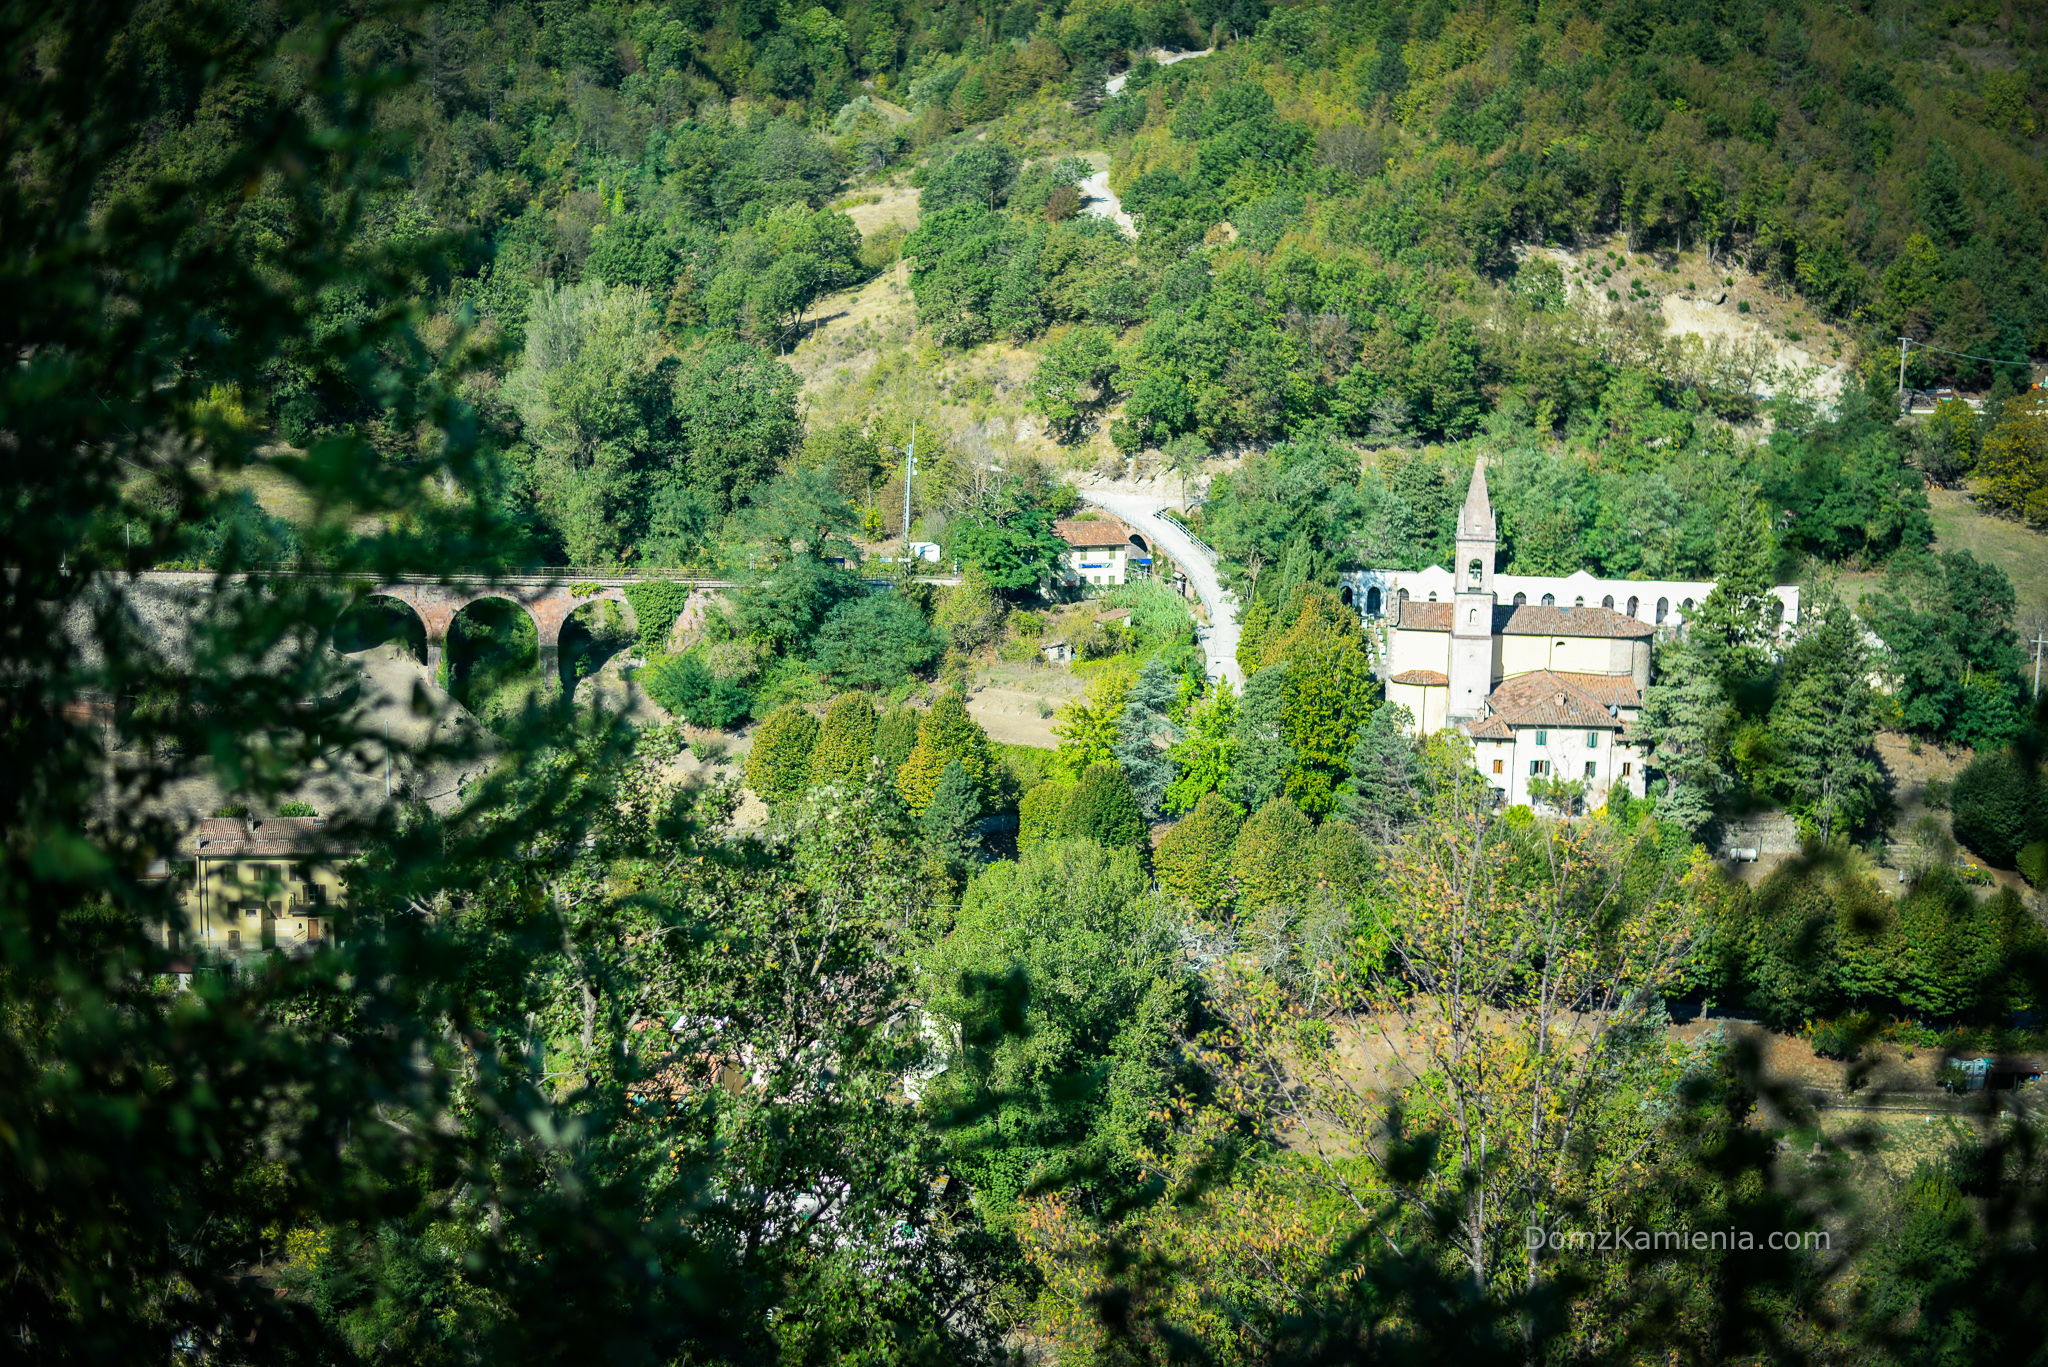 Dom z Kamienia, trekking w Italii, Kasia Nowacka